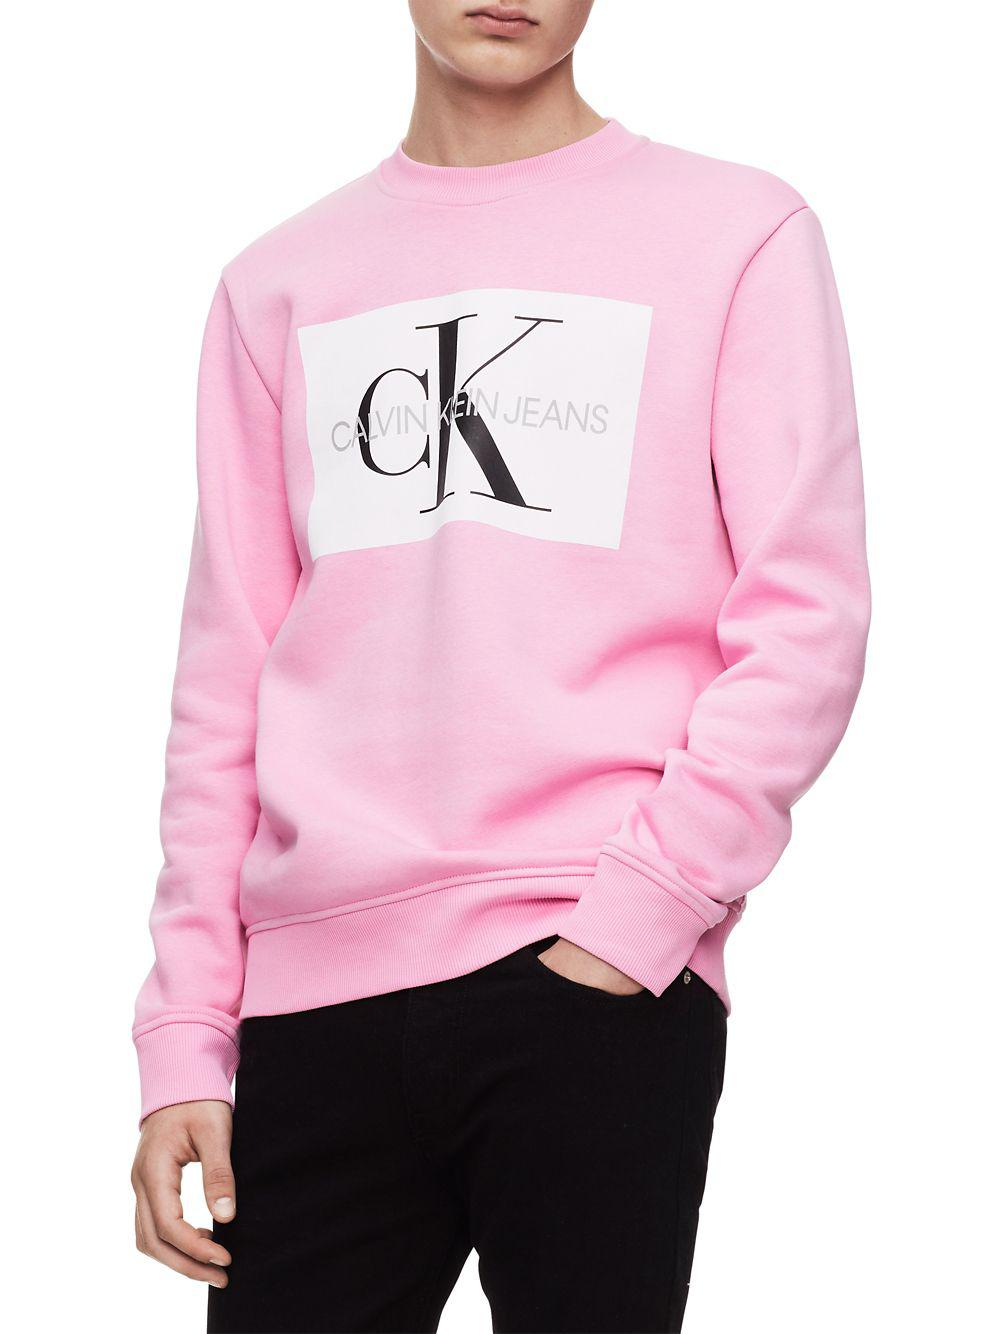 Calvin Klein Cotton Monogram Sweatshirt in Pink for Men - Lyst